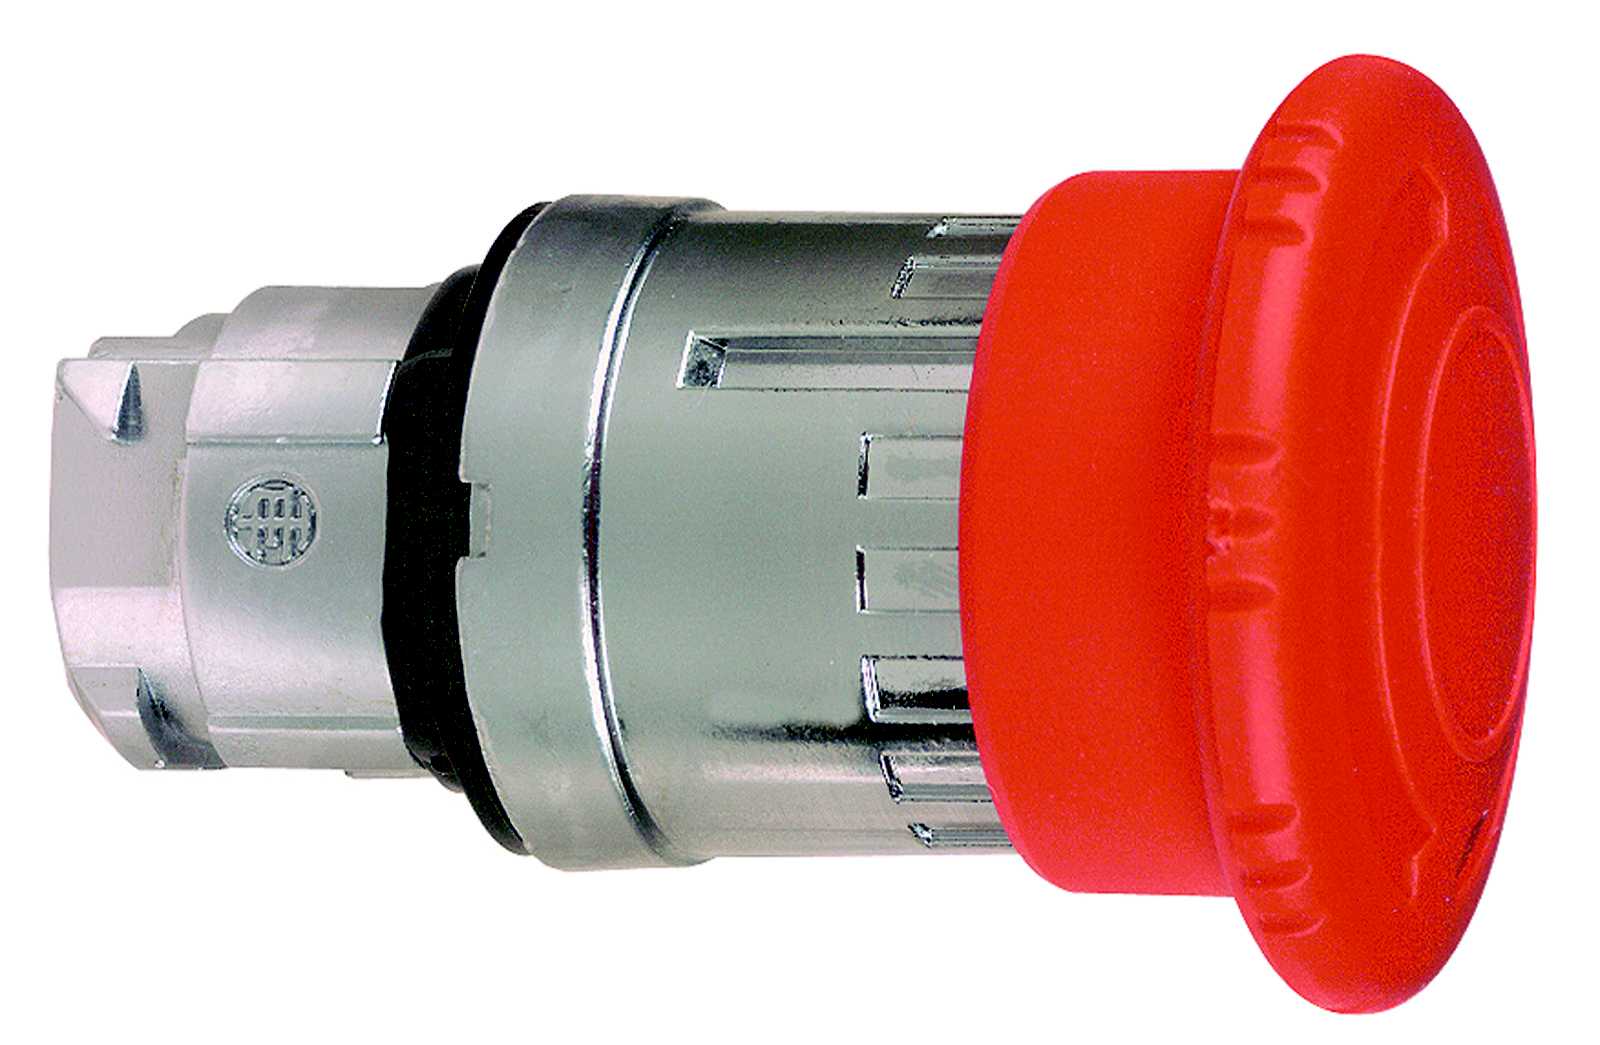 Schneider Electric - Nødstopphode i metall med Ø40 mm sopphode i rød farge med trykk/vri funksjon